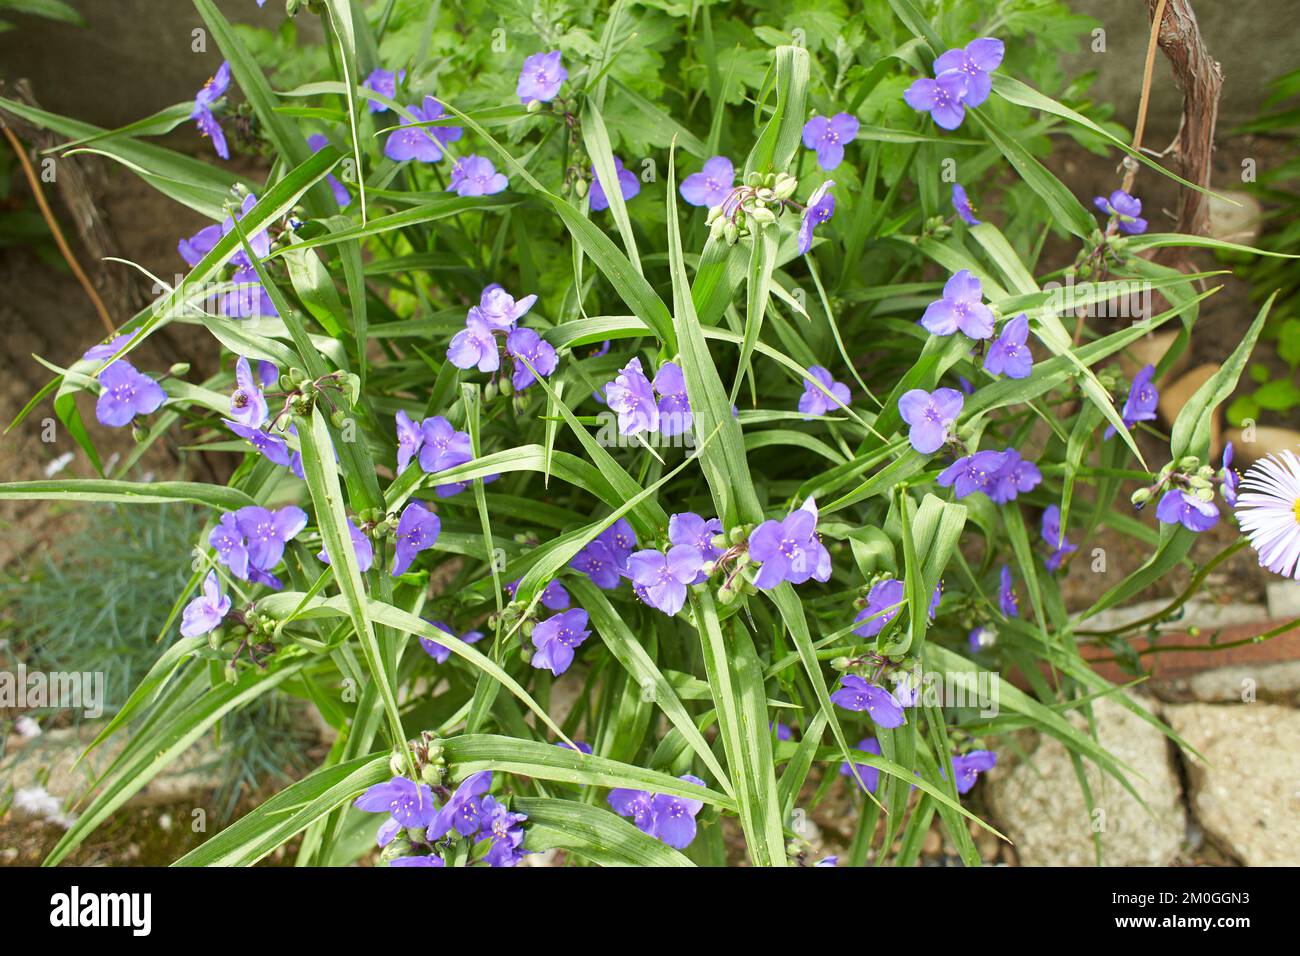 Nahaufnahme vieler kleiner blauer Blüten und grüner Blätter der Pflanze Tradescantia Virginiana, allgemein bekannt als Virginia Spiderwort oder Bluejacke in einem sonnigen s Stockfoto